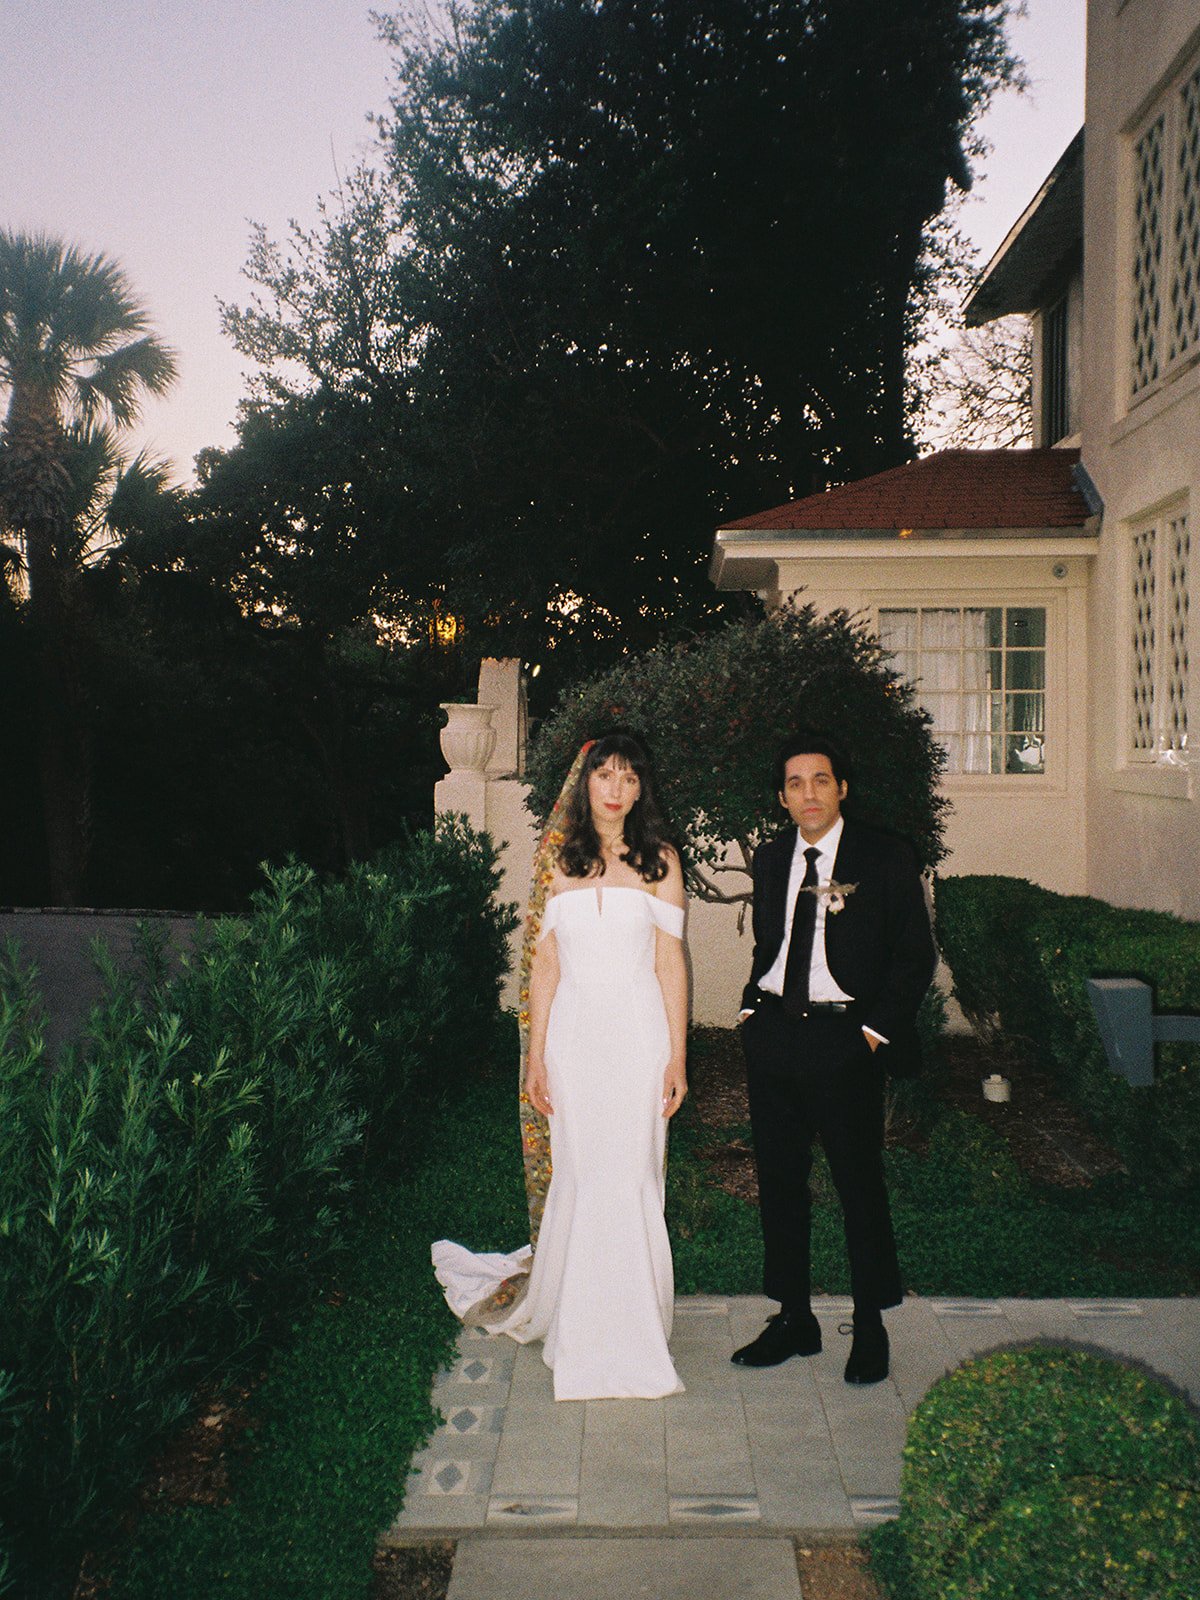 Best-Austin-Wedding-Photographers-Elopement-Film-35mm-Asheville-Santa-Barbara-Laguna-Gloria-86.jpg